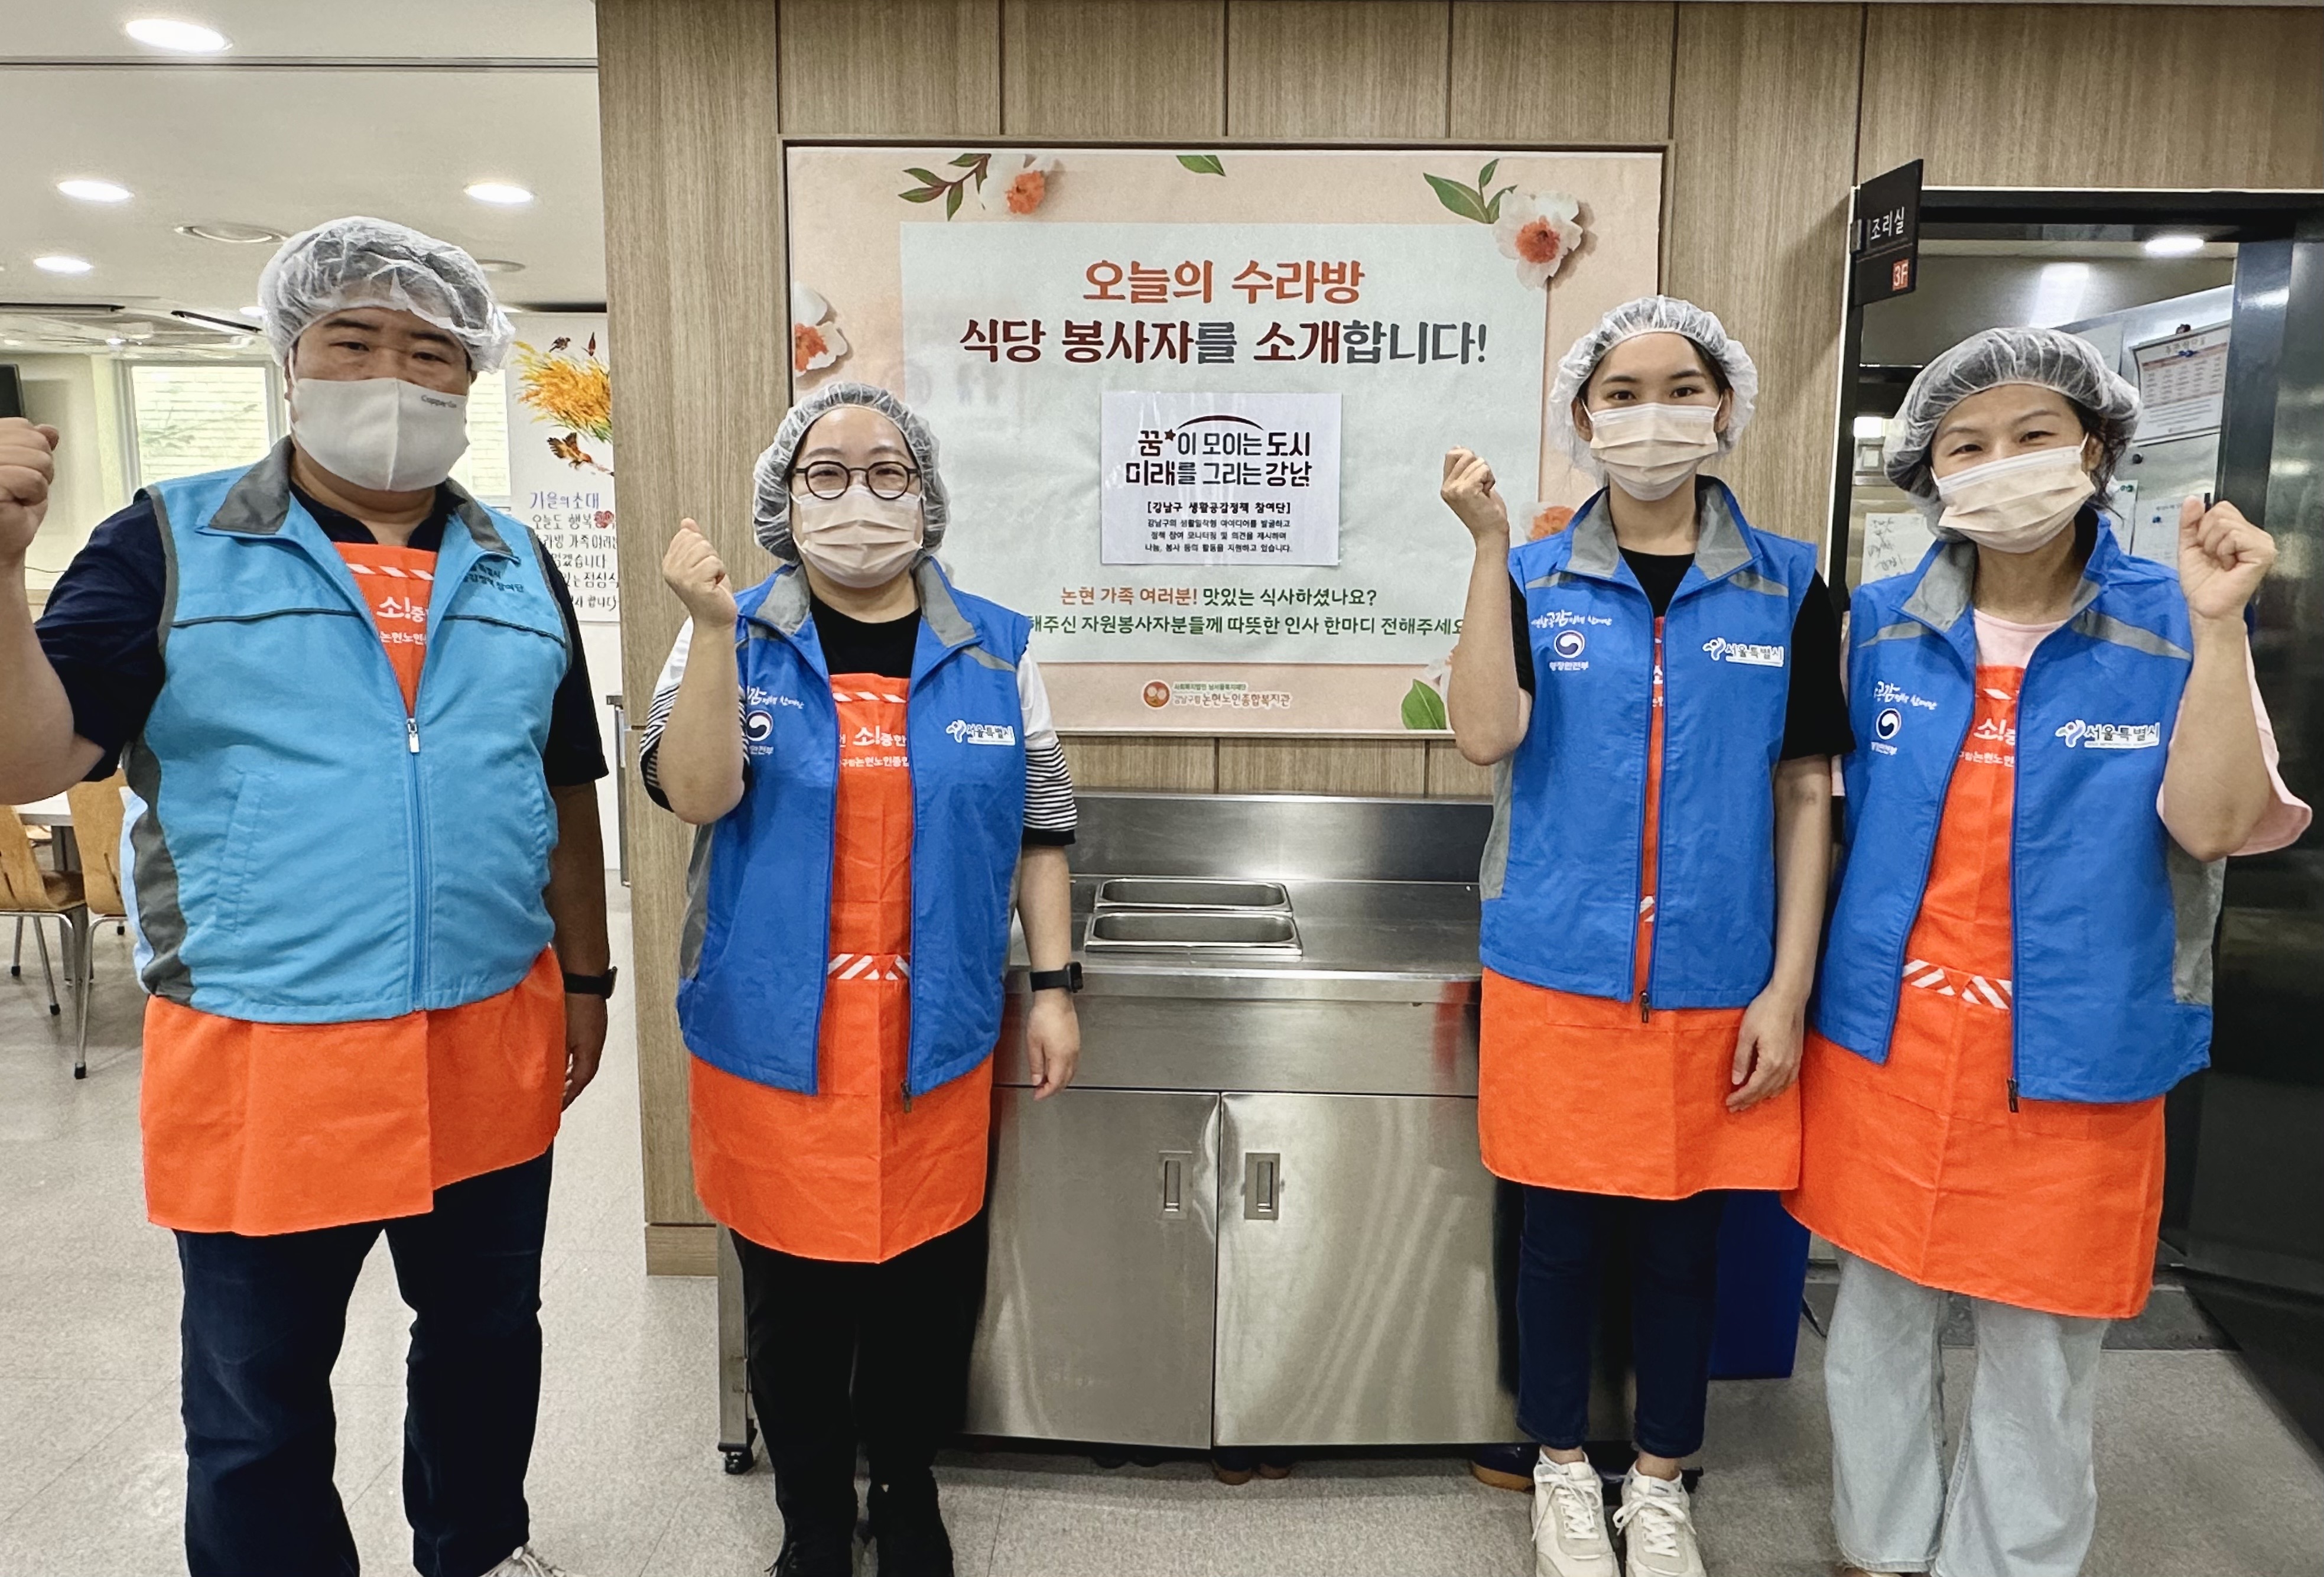 강남구 생활공감정책 참여단, 단체 경로식당 배식 지원 [일반자원봉사사업]